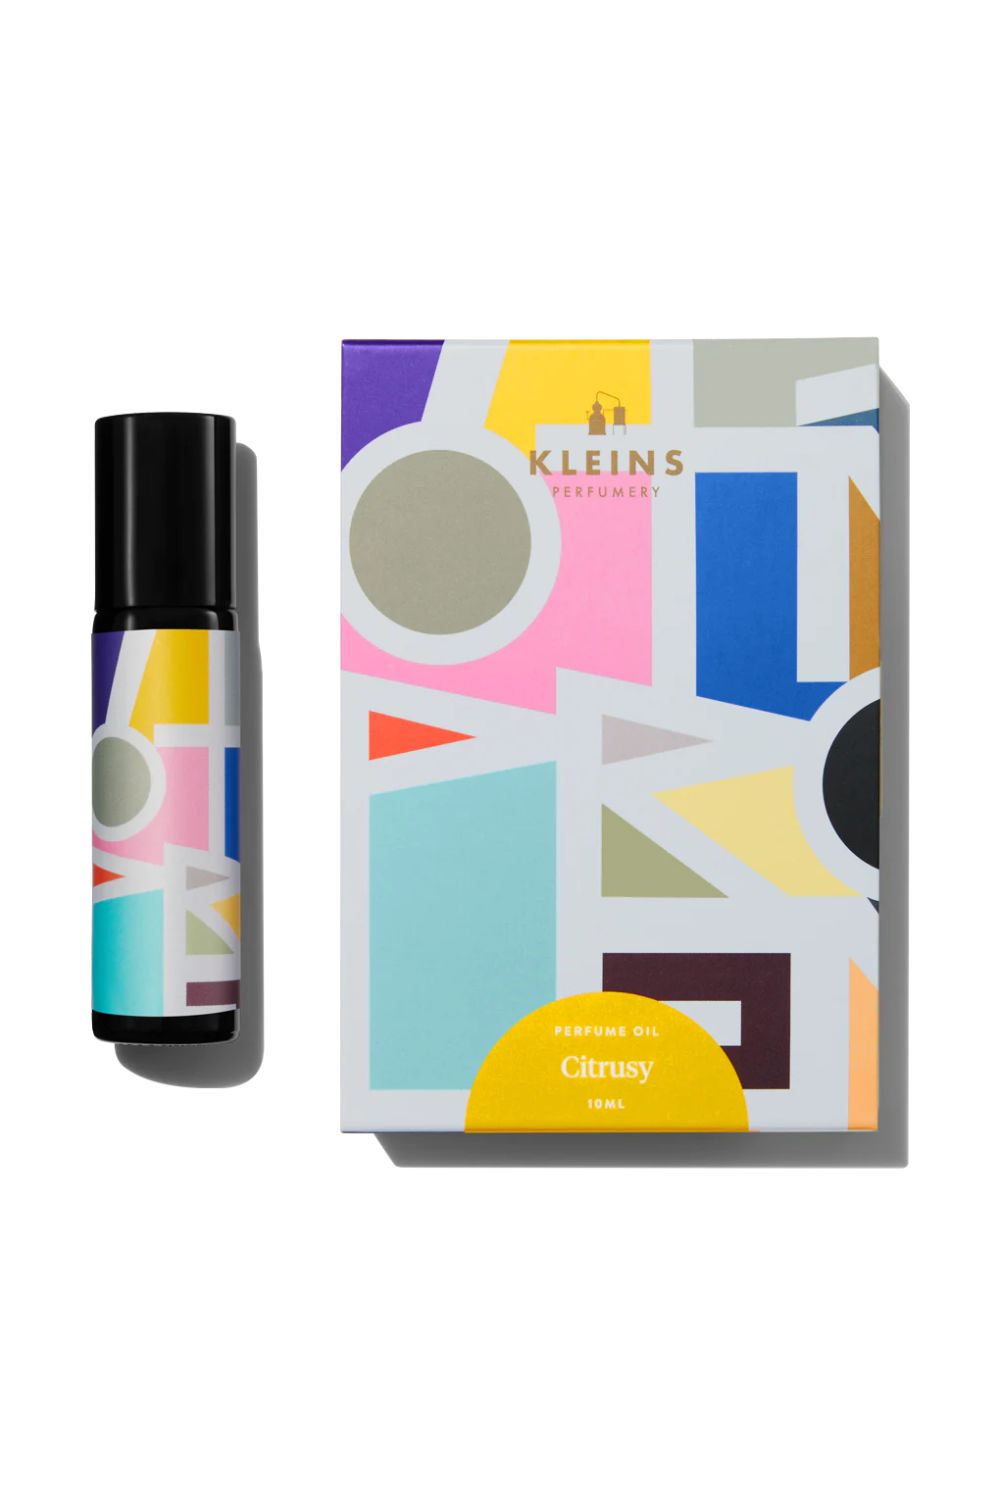 KLEINS PERFUMERY | CITRUSY PERFUME OIL